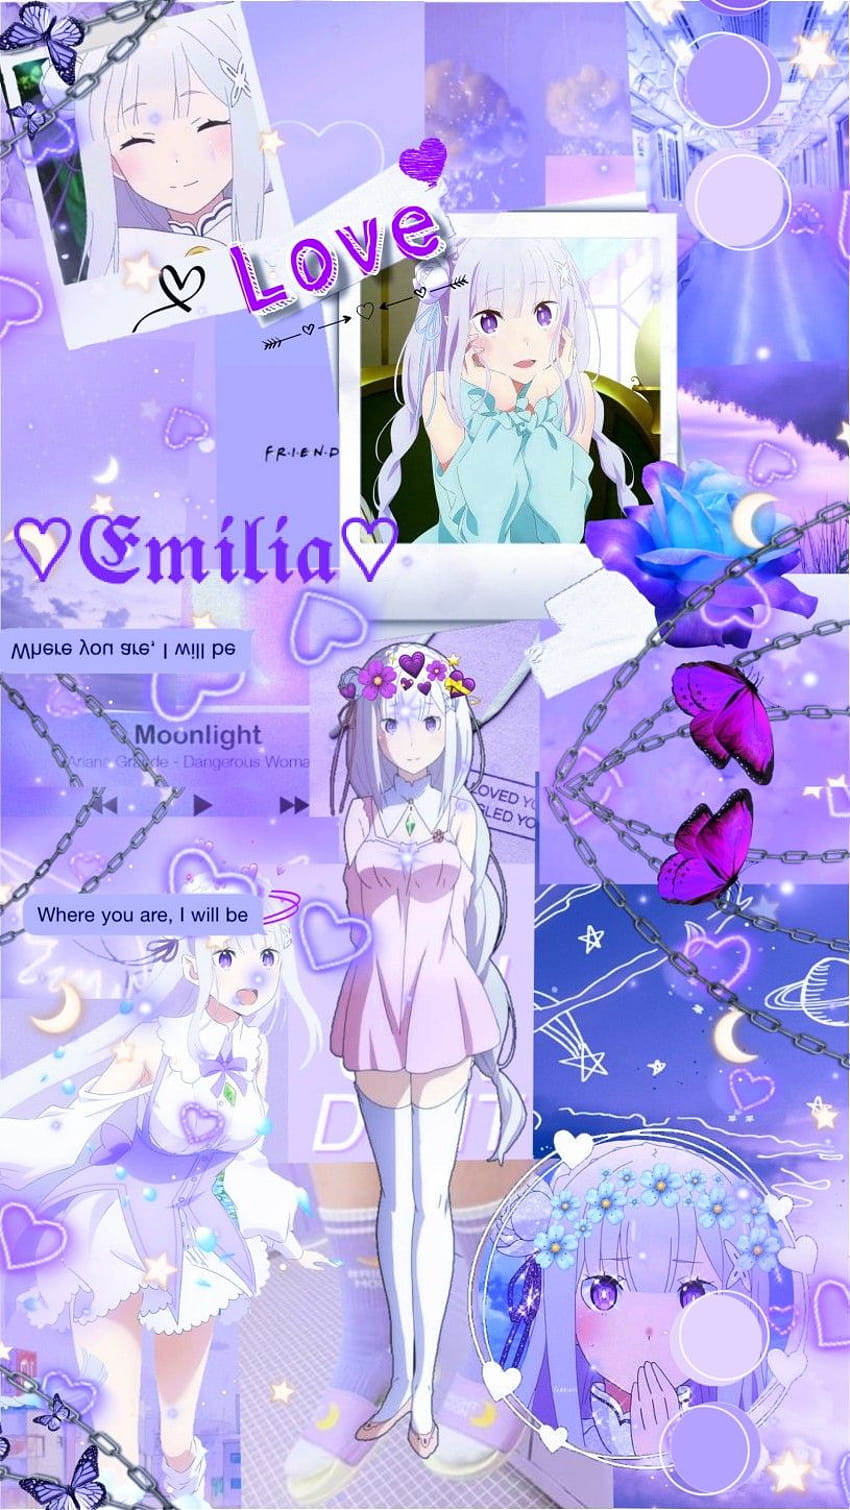 Emilia Re Zero: Hãy xem hình ảnh của Emilia từ bộ anime nổi tiếng Re: Zero với đôi mắt tuyệt đẹp và mái tóc màu lục tinh khiết. Emilia là nhân vật yêu thích của rất nhiều người, thể hiện sức mạnh, tình cảm và lòng trung thành - các yếu tố đáng yêu sẽ khiến bạn không thể rời mắt khỏi bức ảnh!